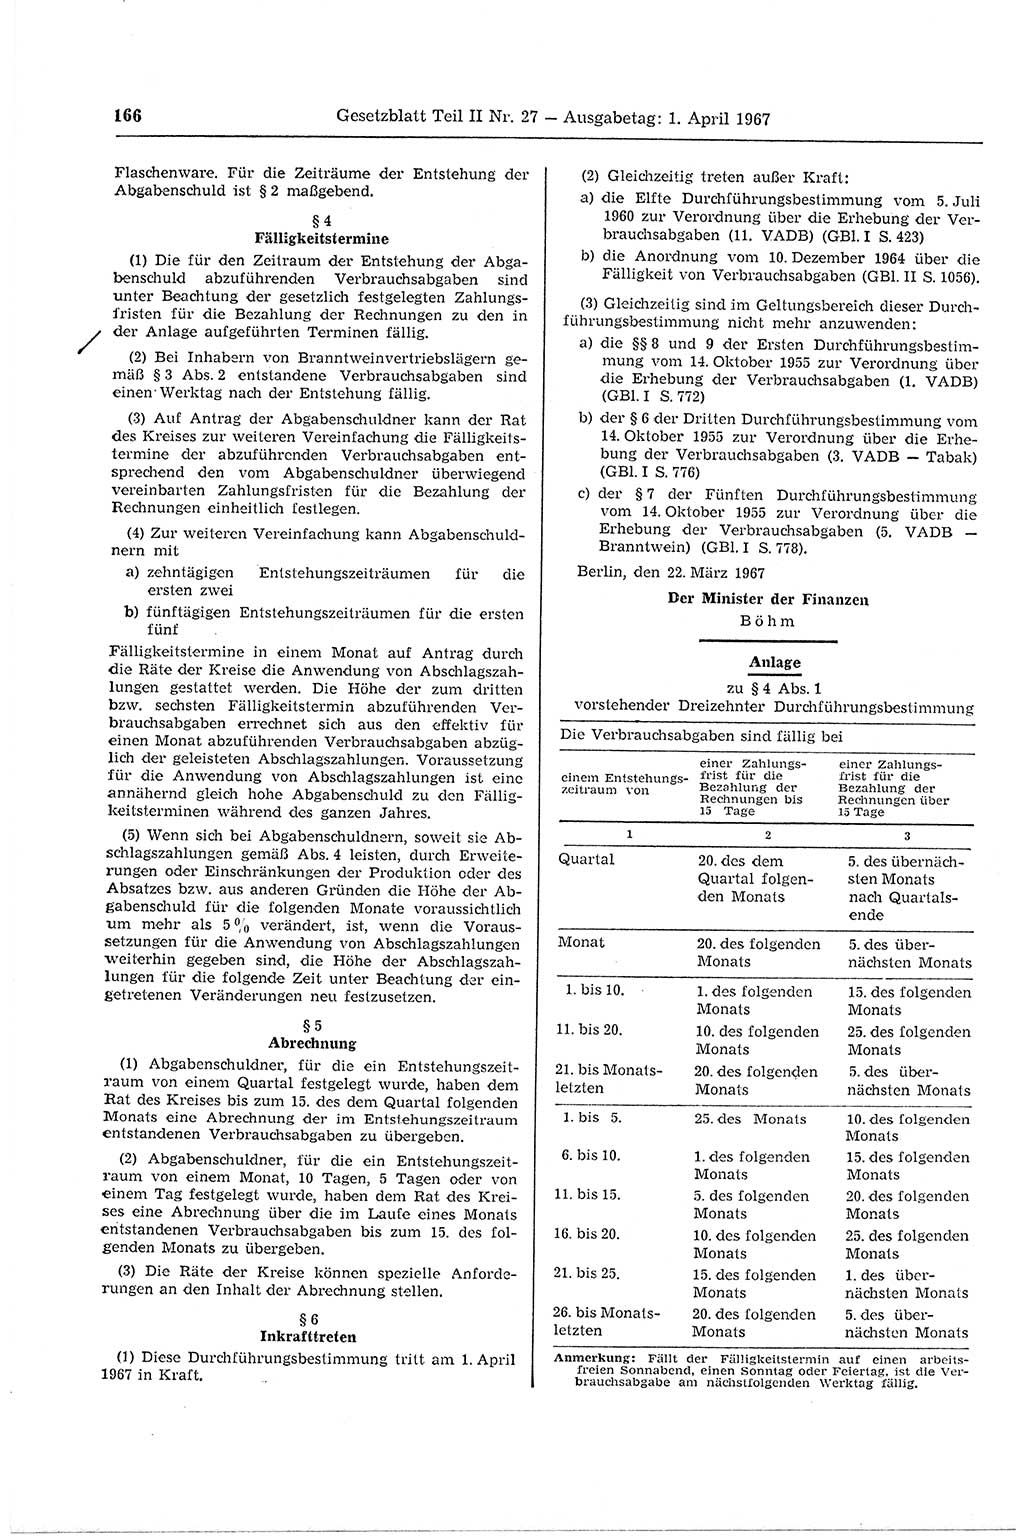 Gesetzblatt (GBl.) der Deutschen Demokratischen Republik (DDR) Teil ⅠⅠ 1967, Seite 166 (GBl. DDR ⅠⅠ 1967, S. 166)